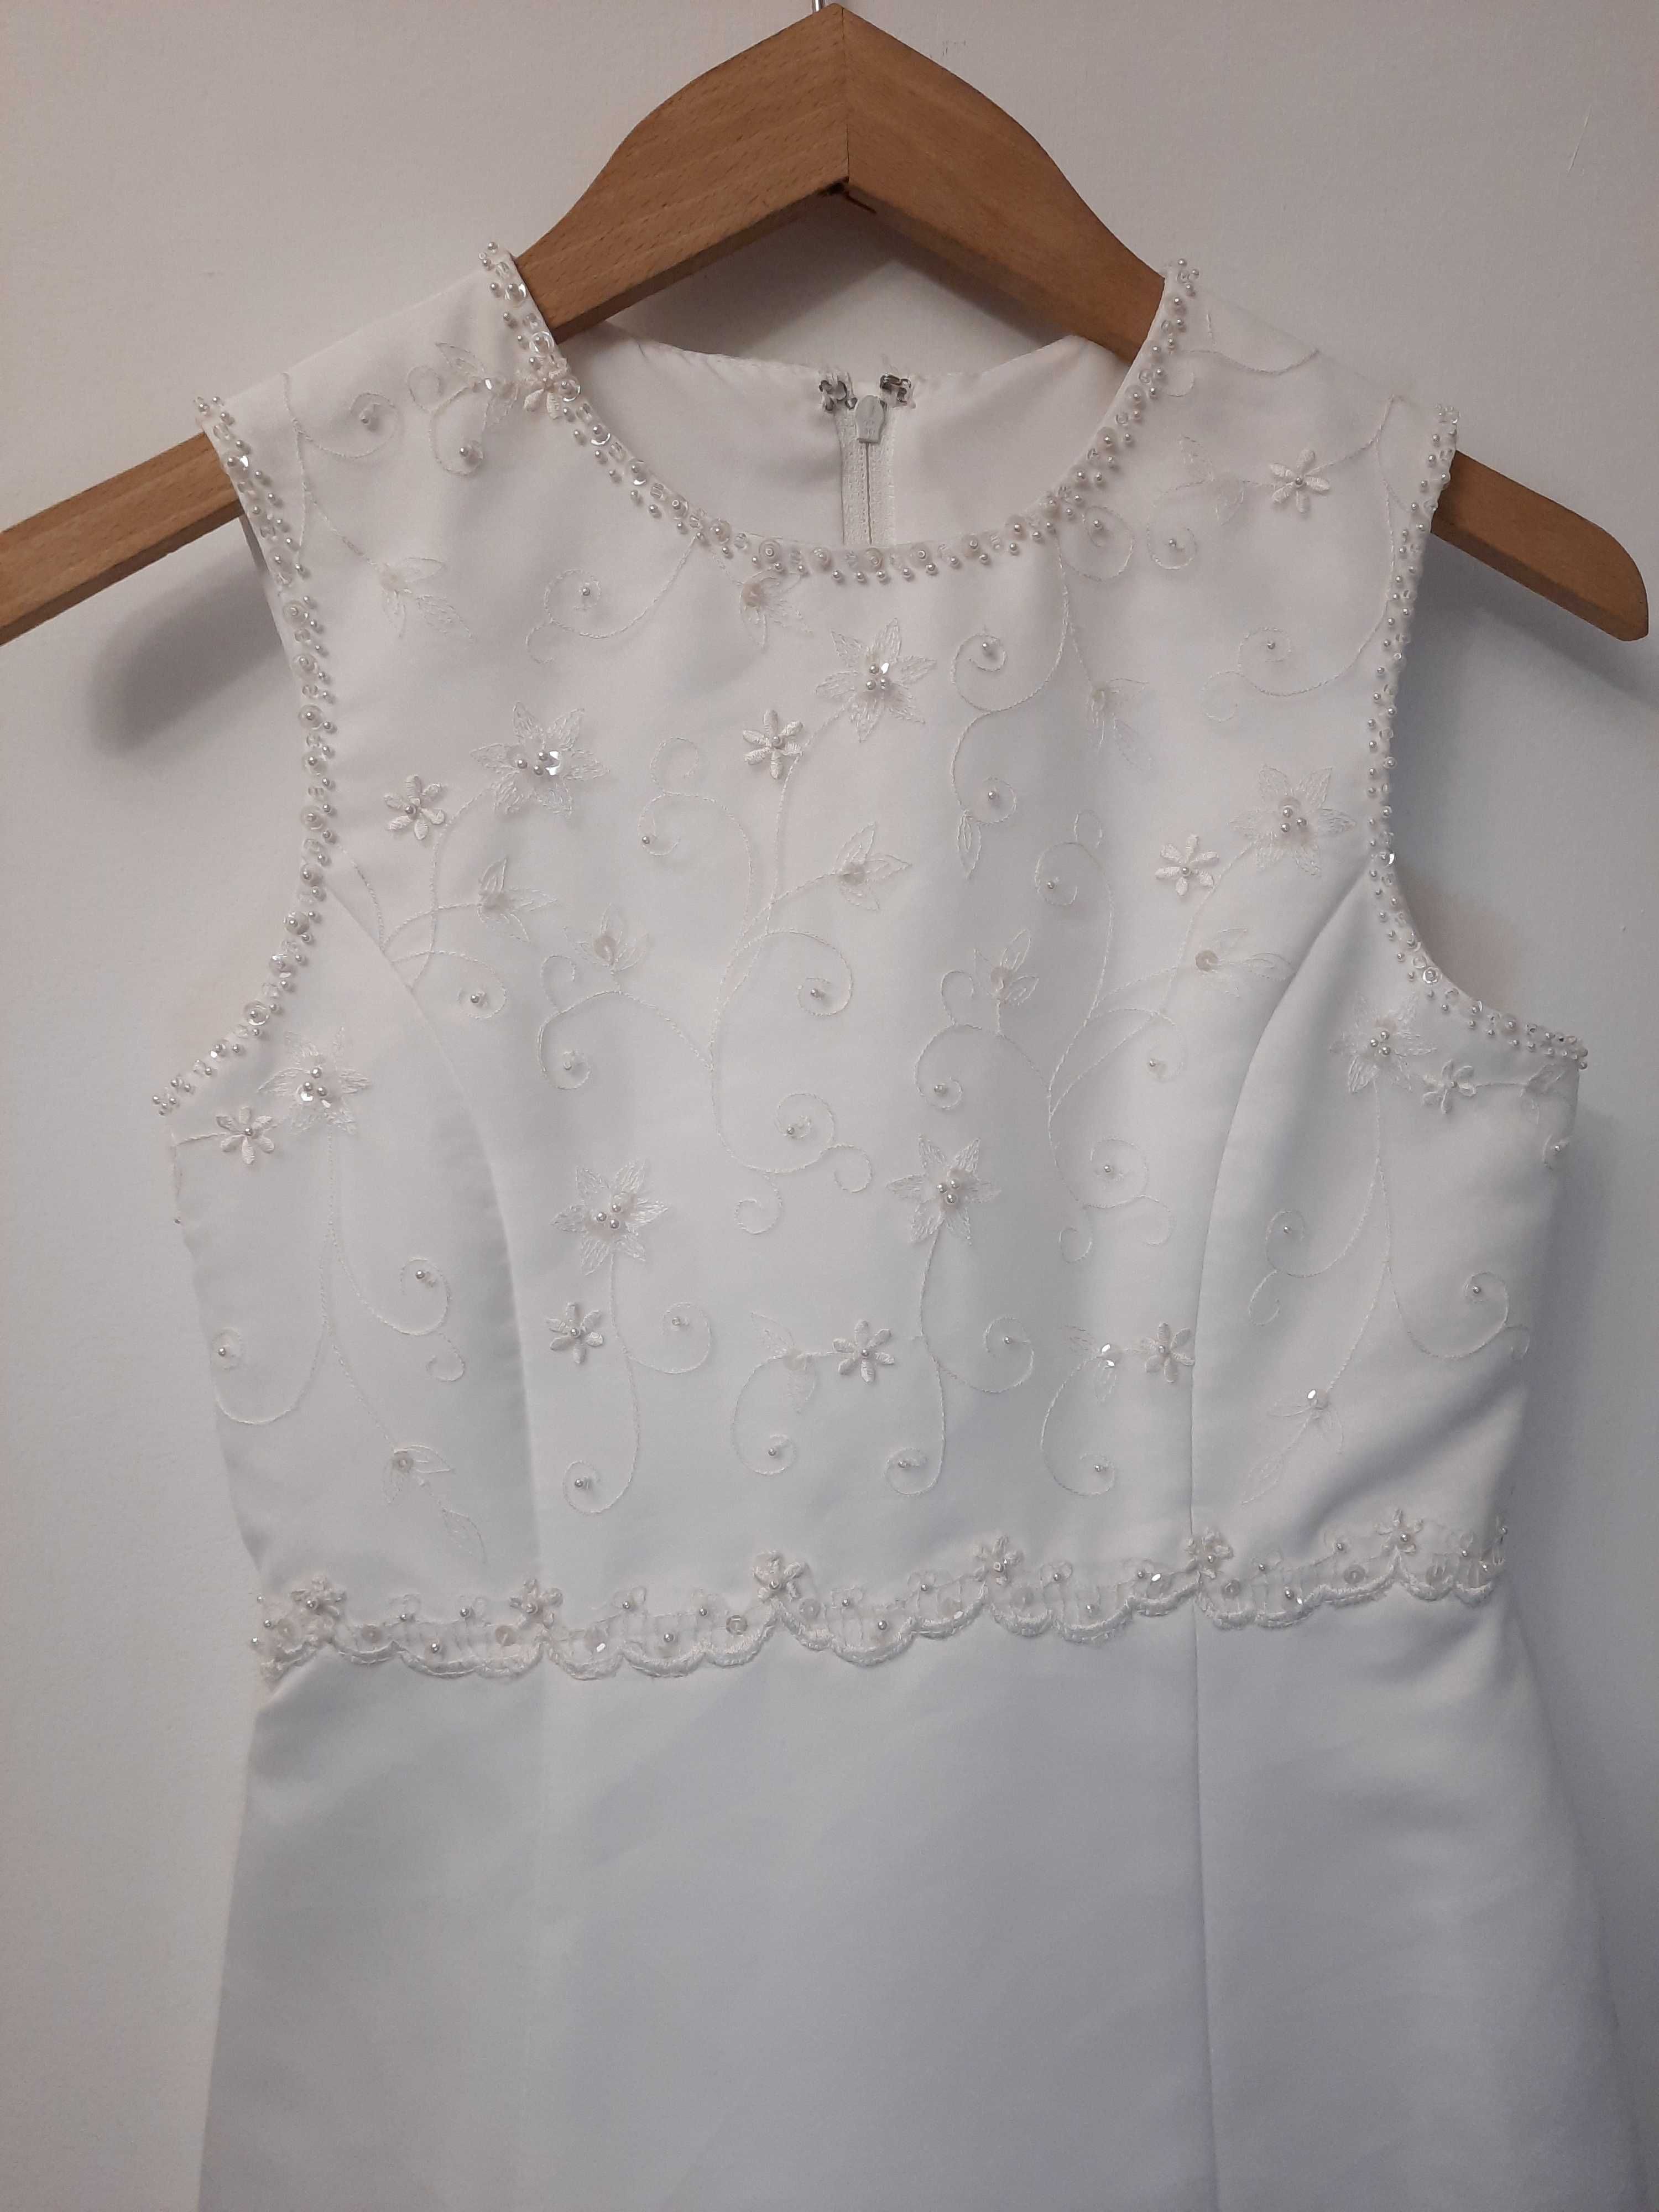 Sukienka komunijna biała komunia Epeople rozmiar orientacyjny 10 lat